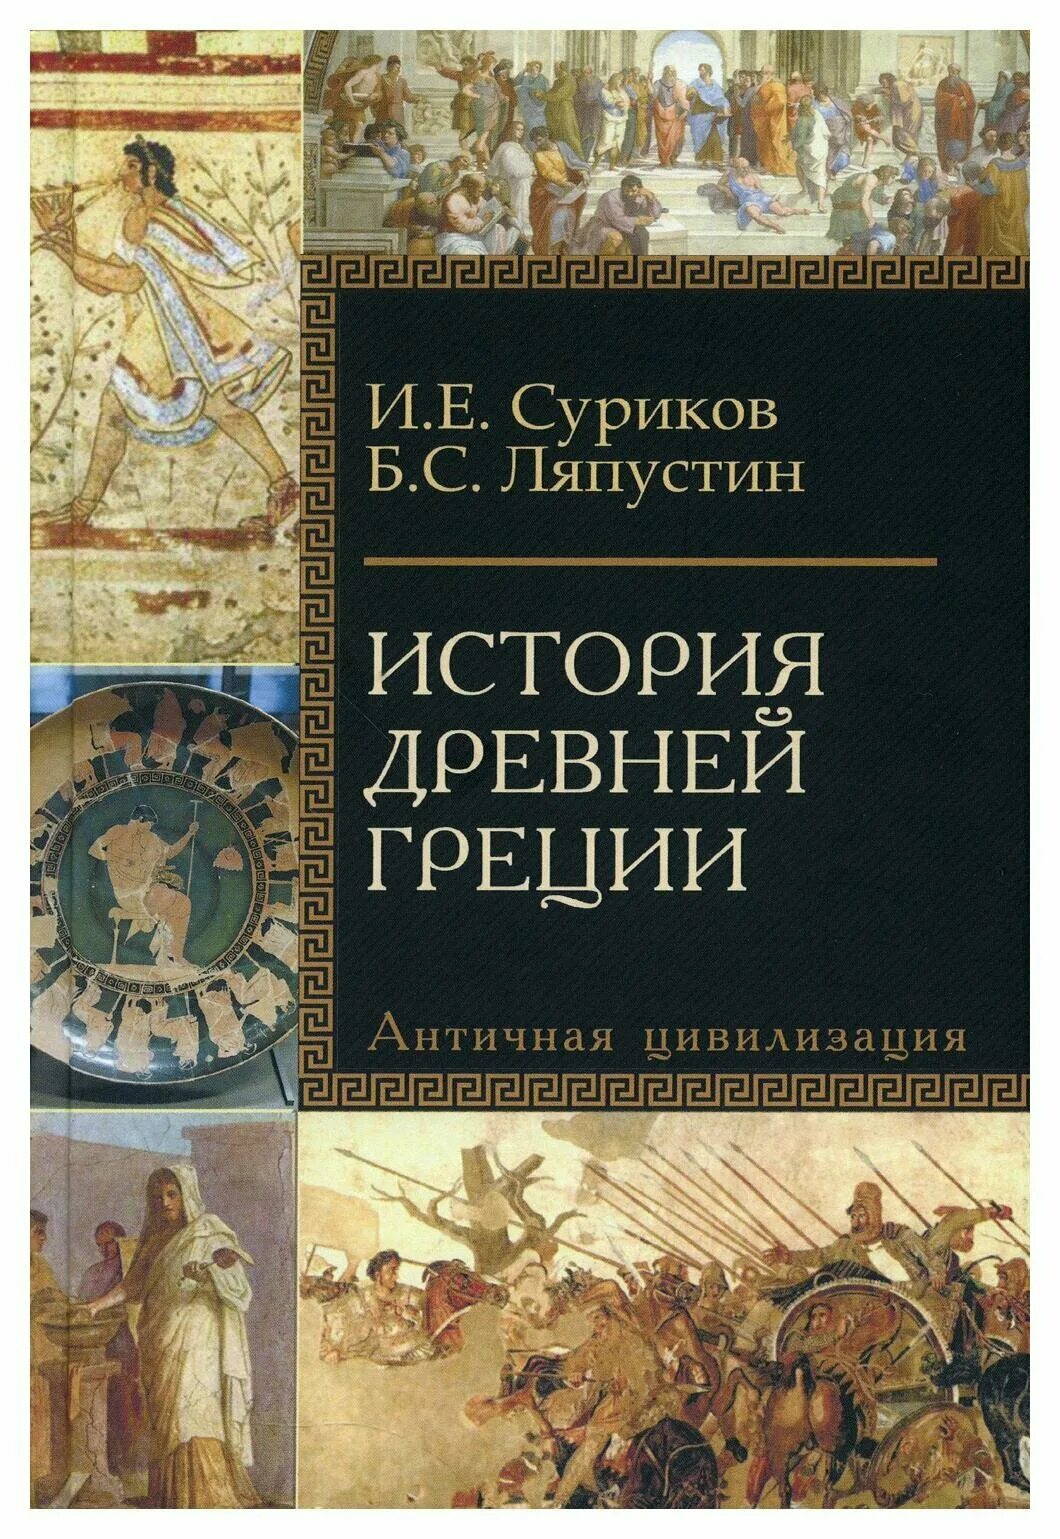 История Греции книга. Книги по античности.